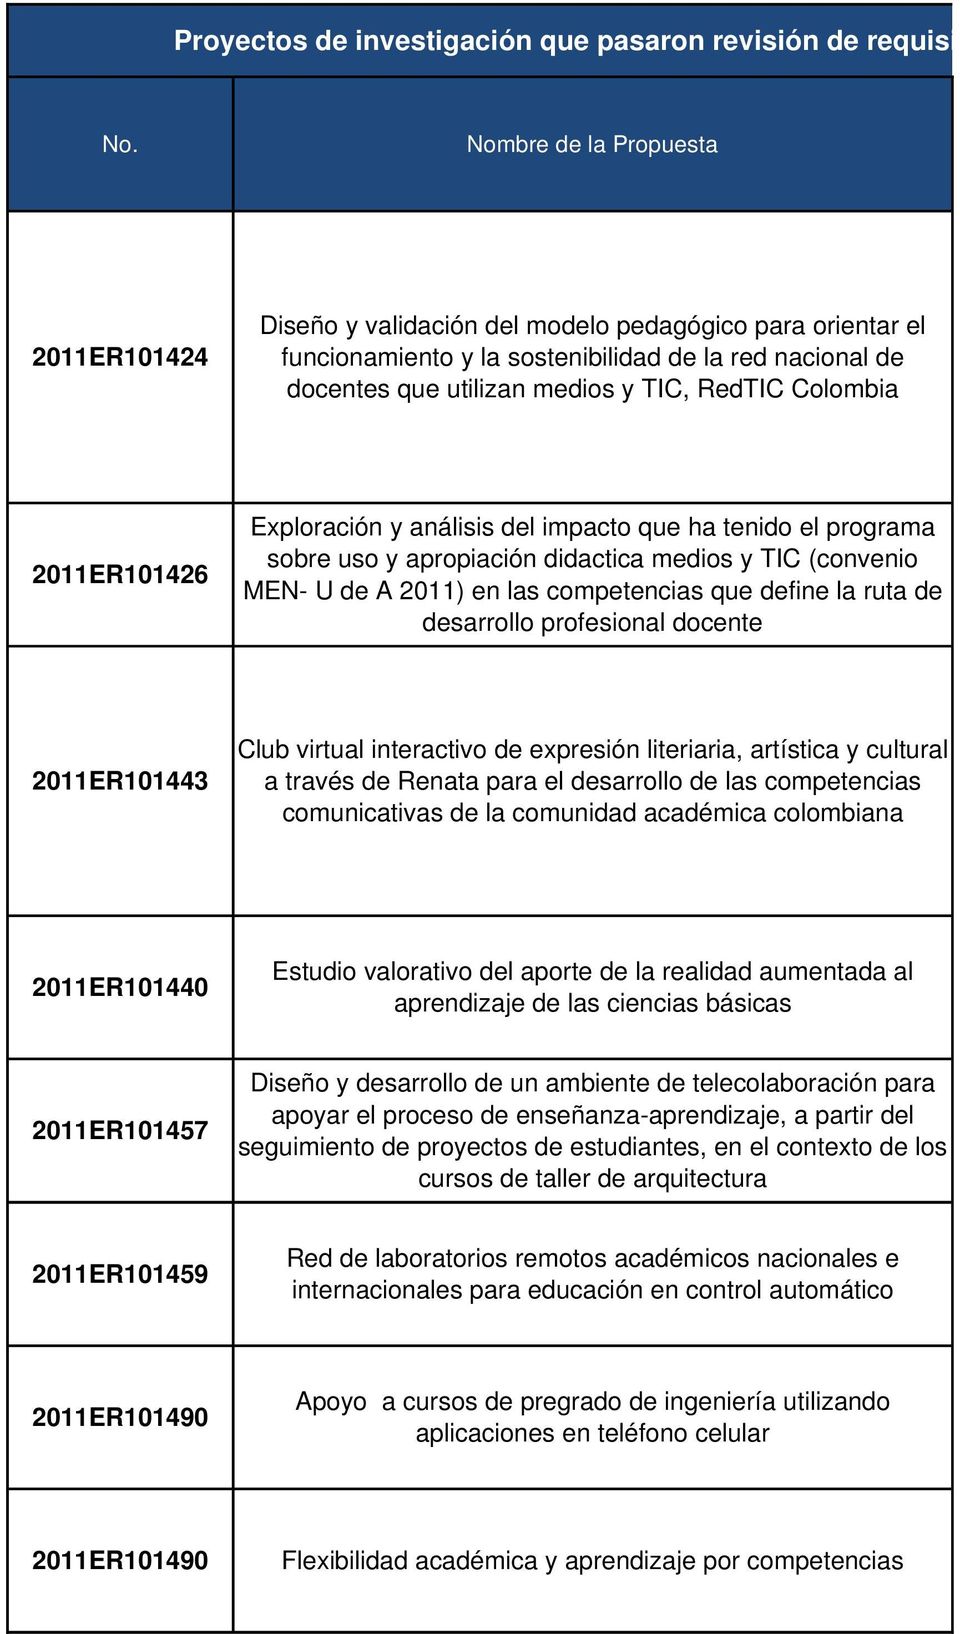 Colombia 2011ER101426 Exploración y análisis del impacto que ha tenido el programa sobre uso y apropiación didactica medios y TIC (convenio MEN U de A 2011) en las competencias que define la ruta de